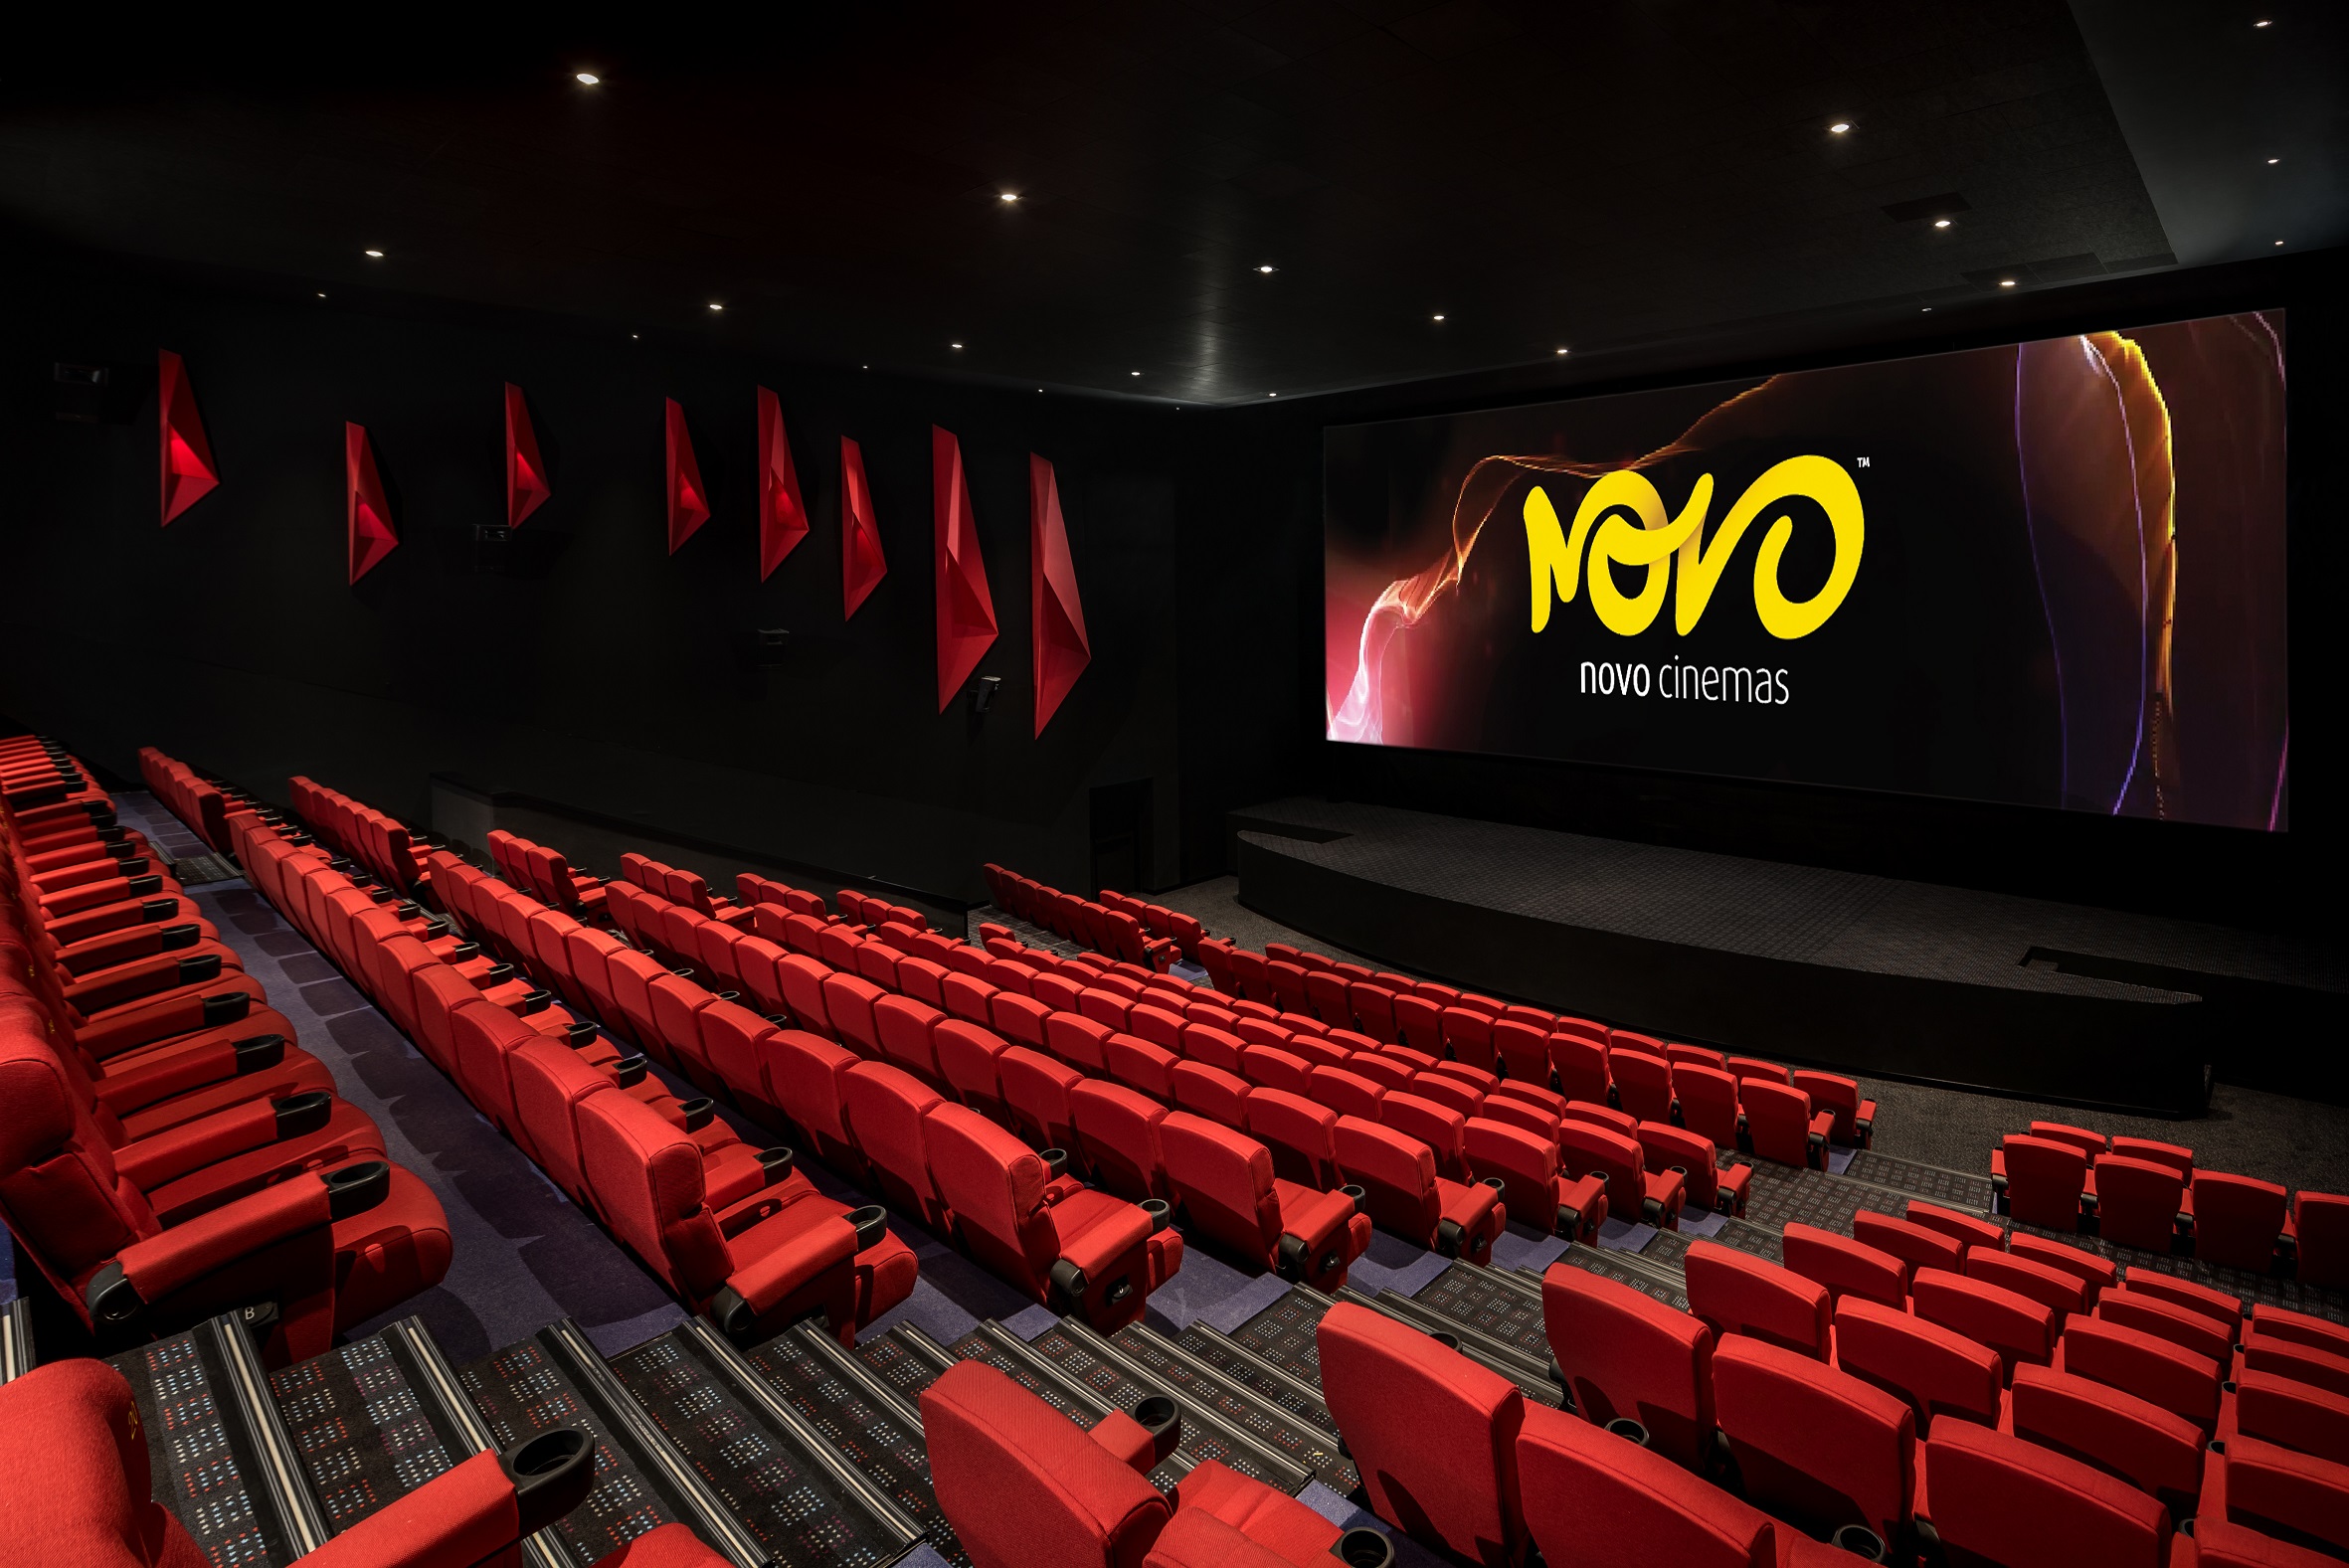 نوفو سينماز تقدم تجربة سينمائية فريدة من نوعها خاصة بالشركات